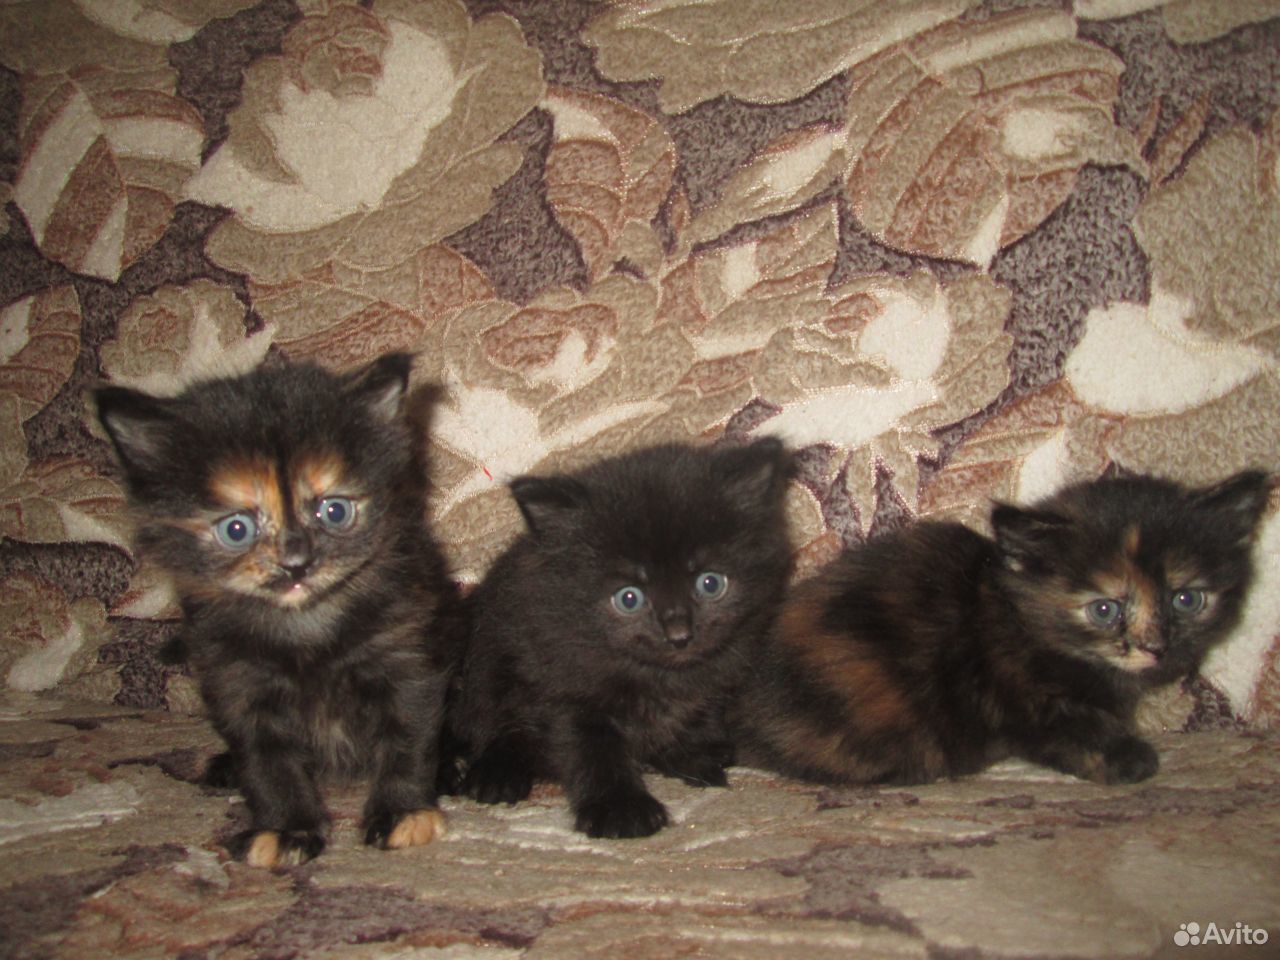 Авито ру Тимашевск фото котят черных трехцветных. У черной кошки родился трехцветный котенок